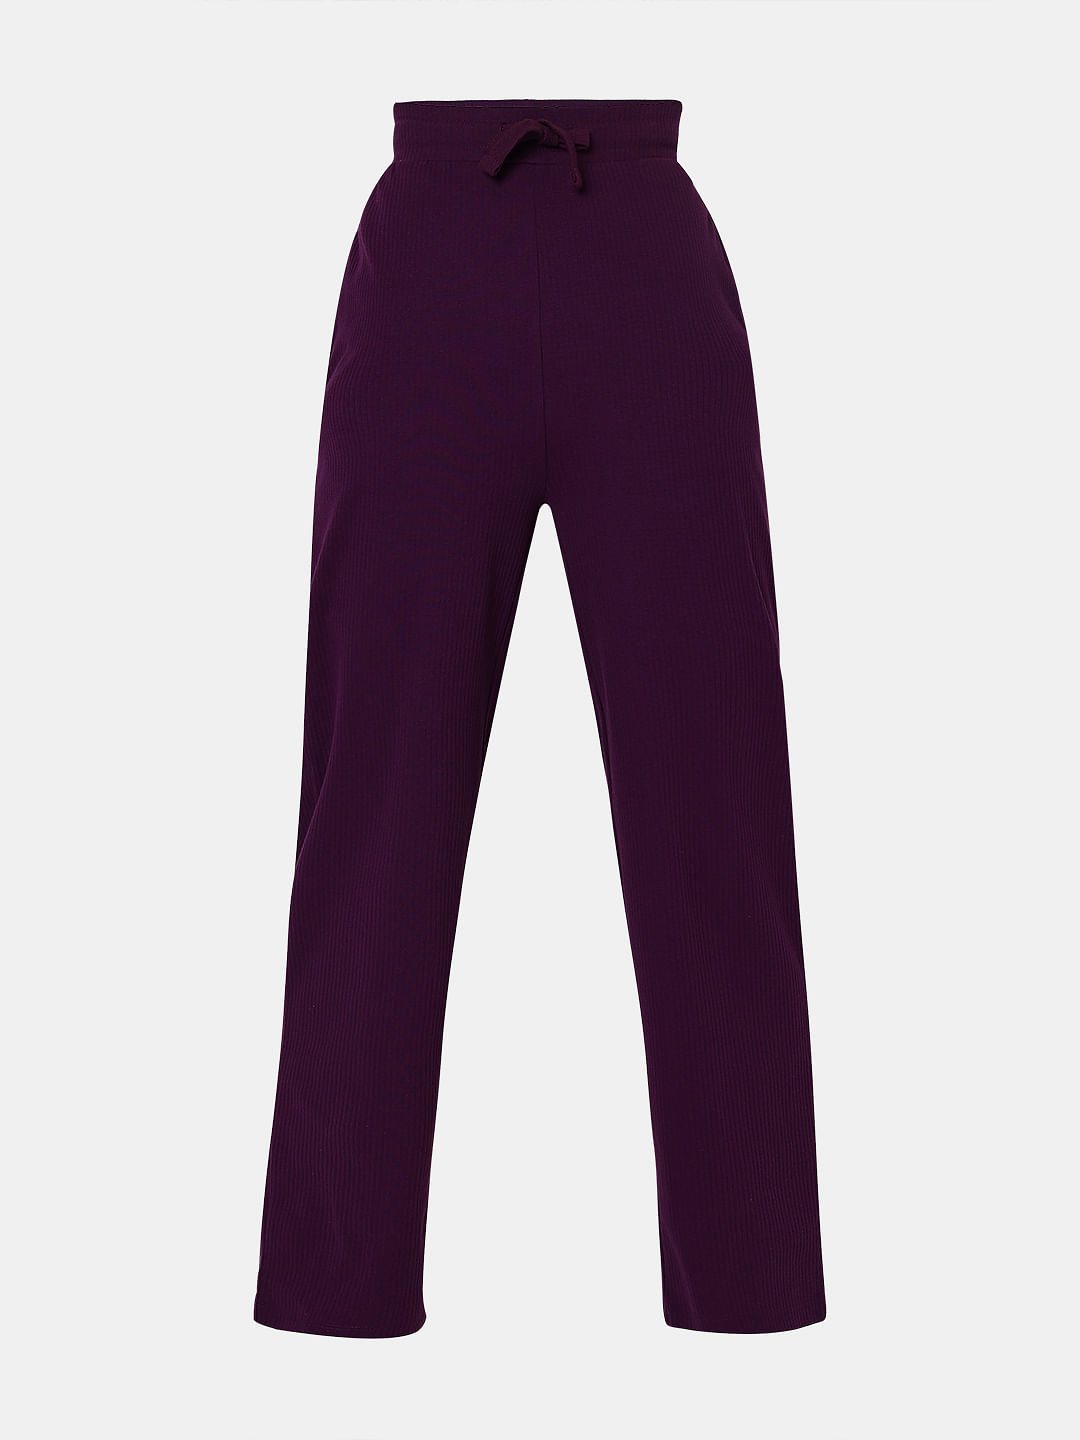 Buy Dark Purple Track Pants for Women by BLISSCLUB Online  Ajiocom